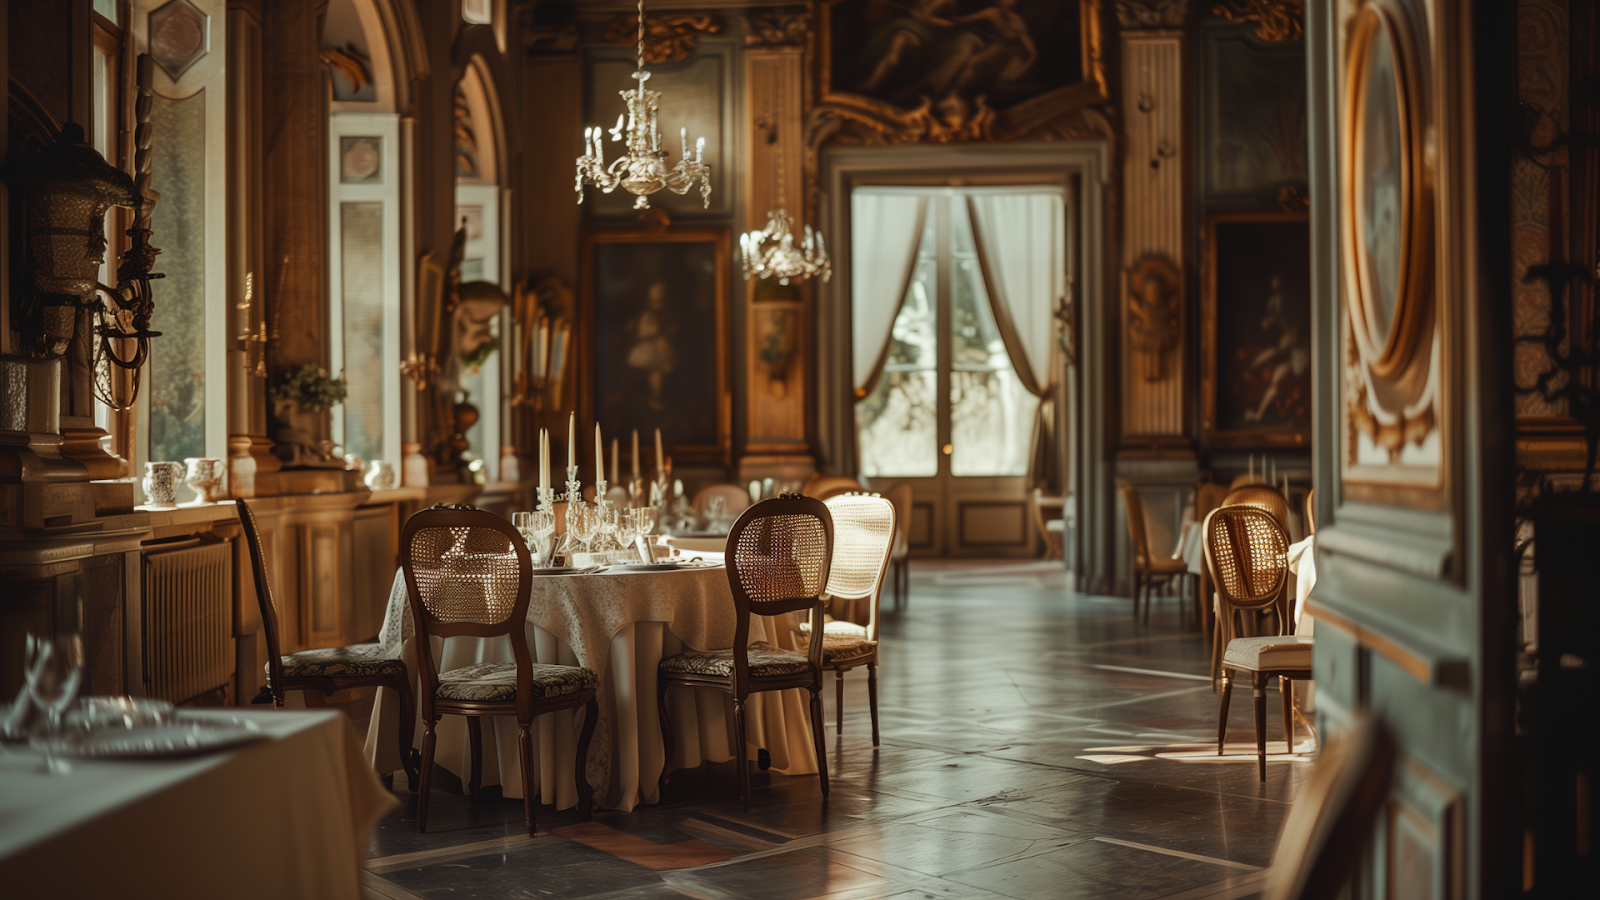 Elegant dining setup inside a Renaissance villa in Tuscany, under vintage chandeliers.